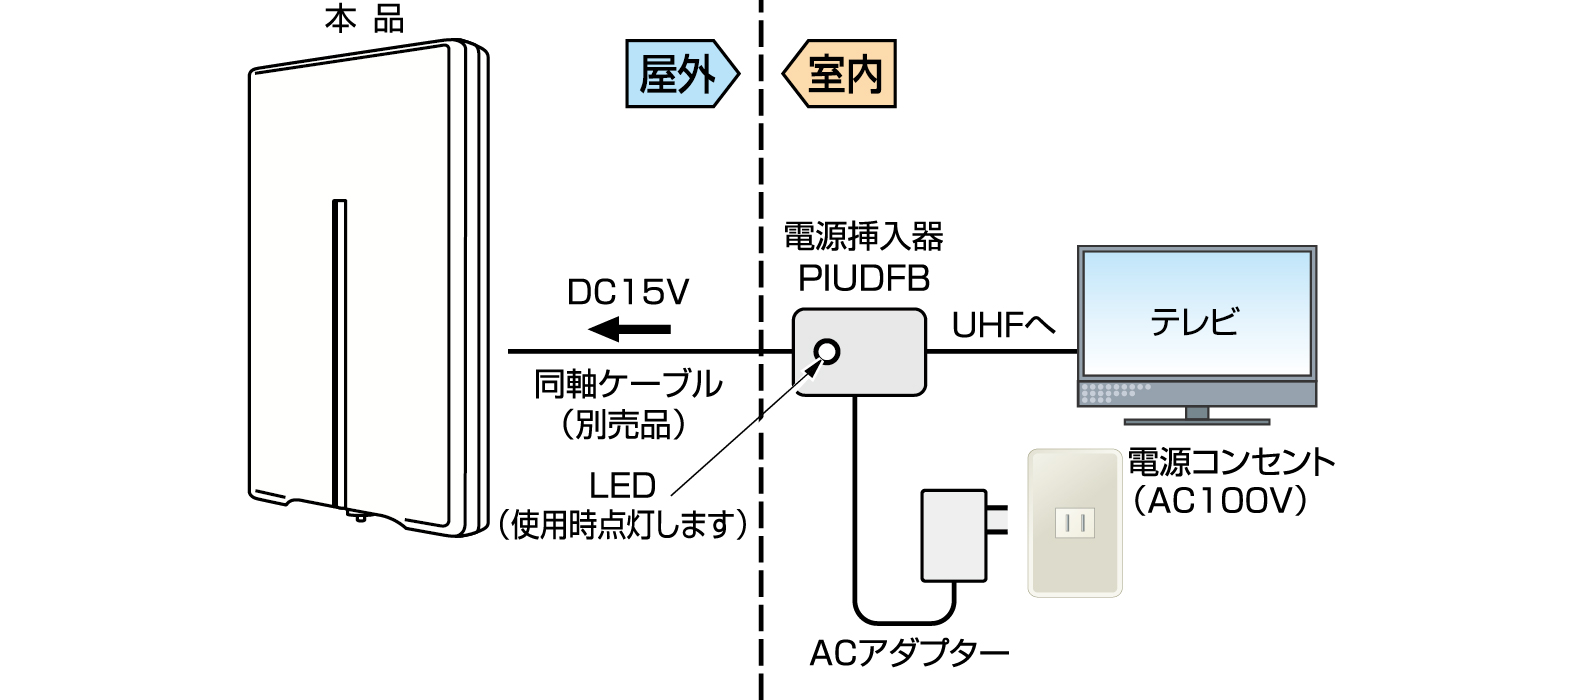 薄型UHFアンテナ UDF85Bの接続例